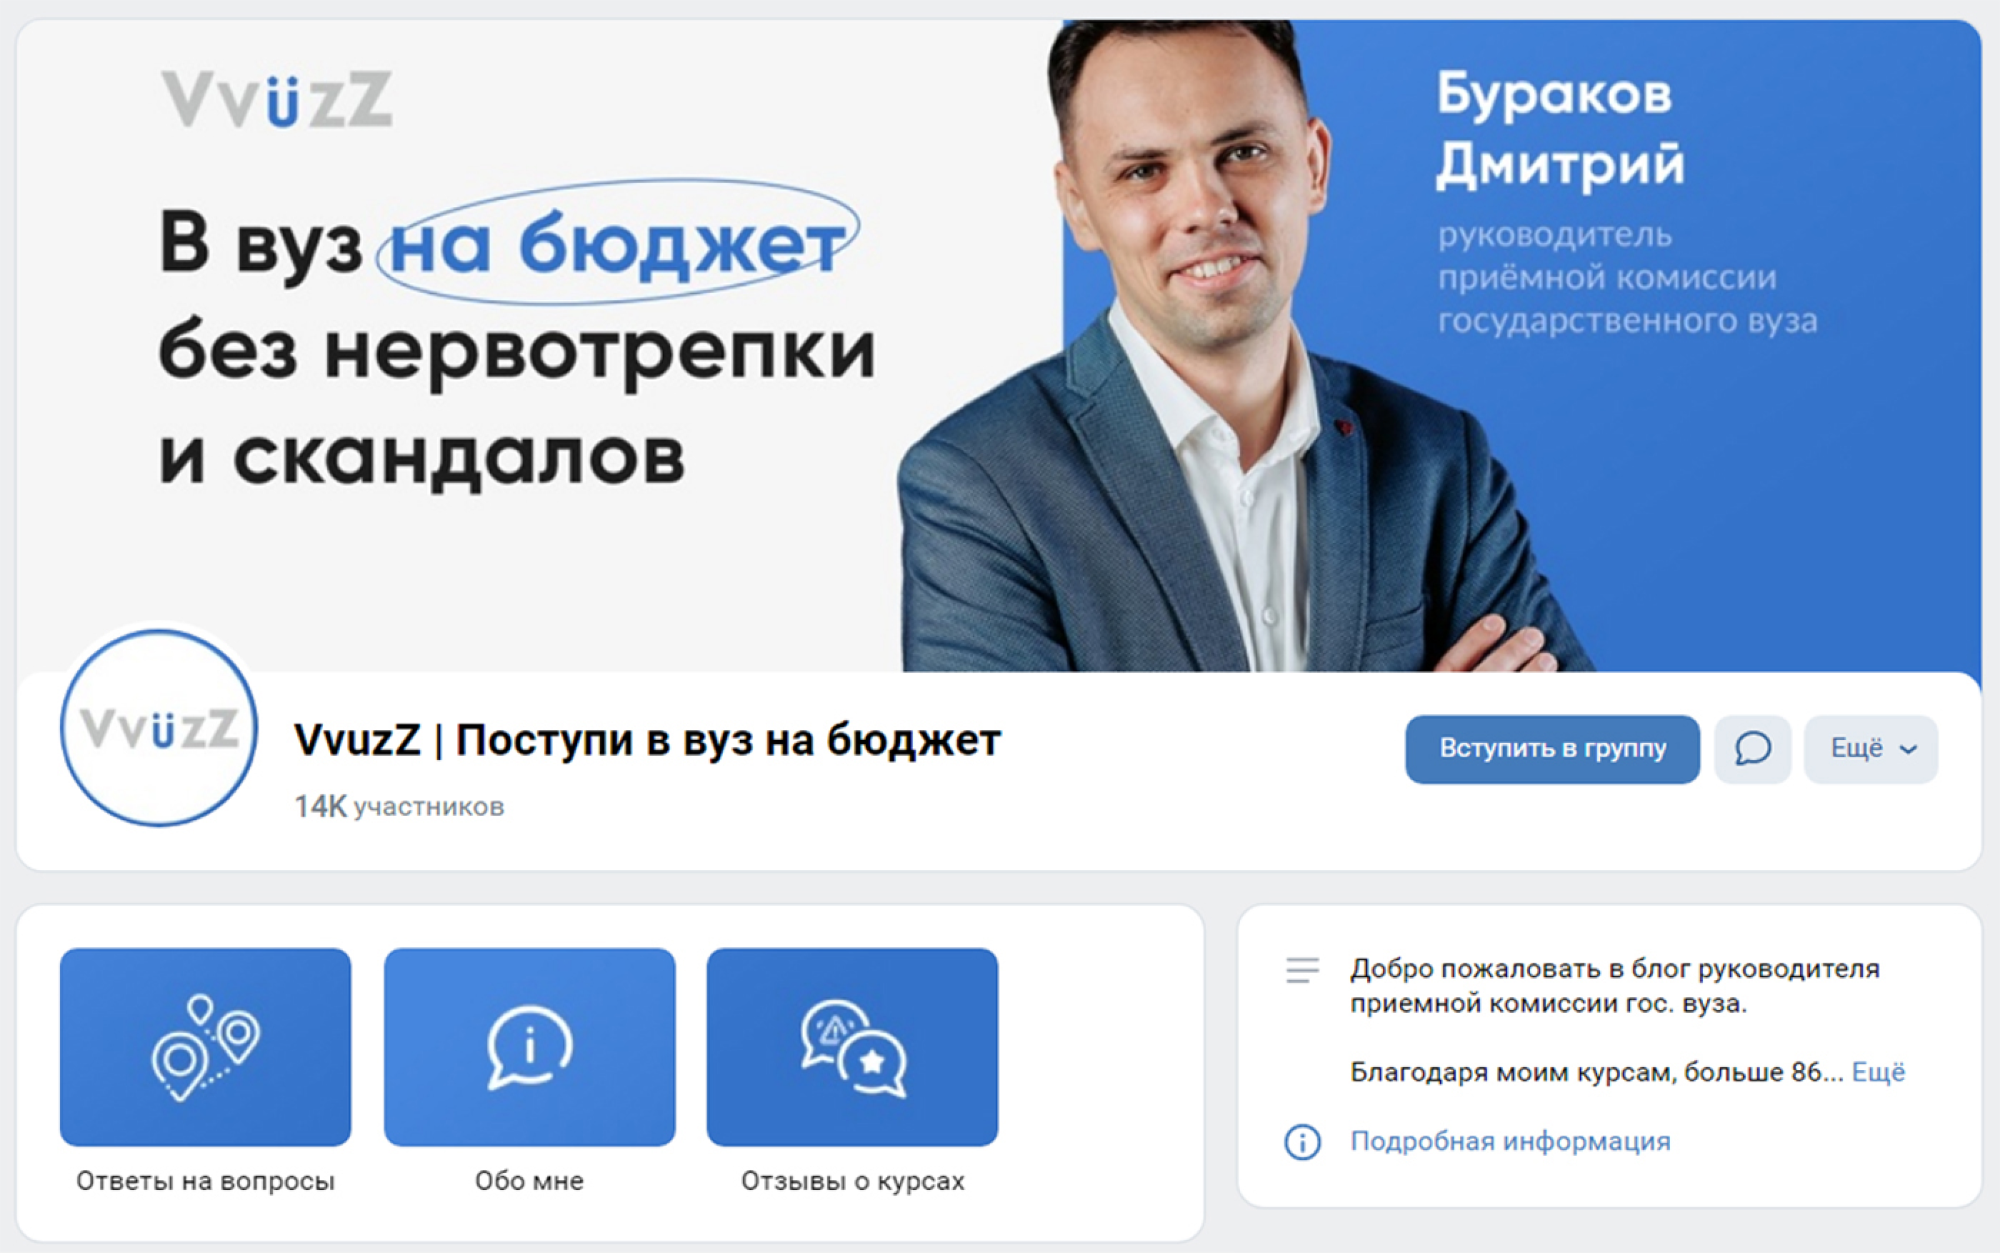 Источник: сообщество «VvuzZ — Поступи в вуз на бюджет» во «Вконтакте»